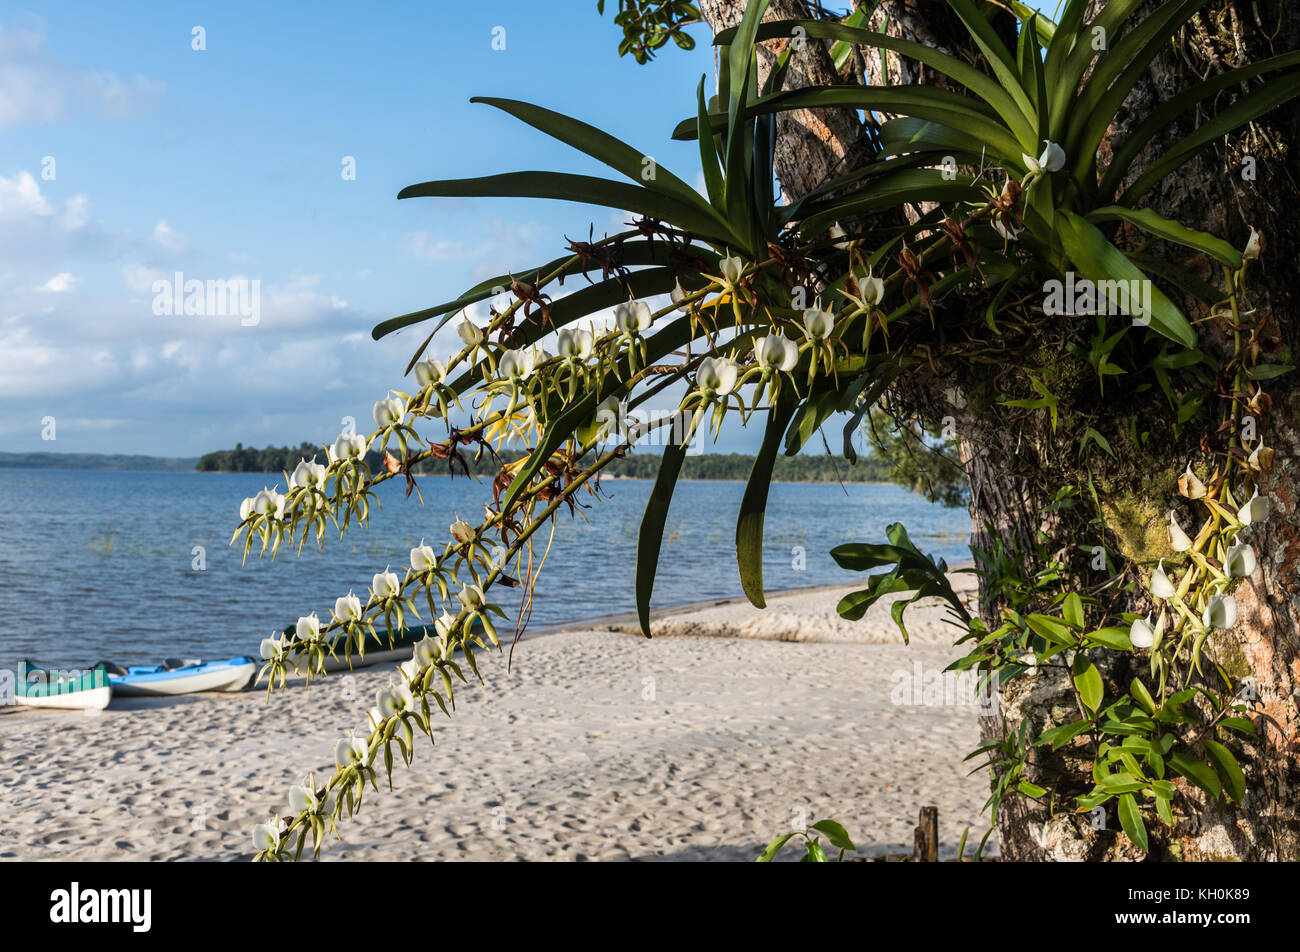 Orchideen mit weißen Blumen wachsen auf einem großen Baum an einem See. Madagaskar, Afrika Stockfoto